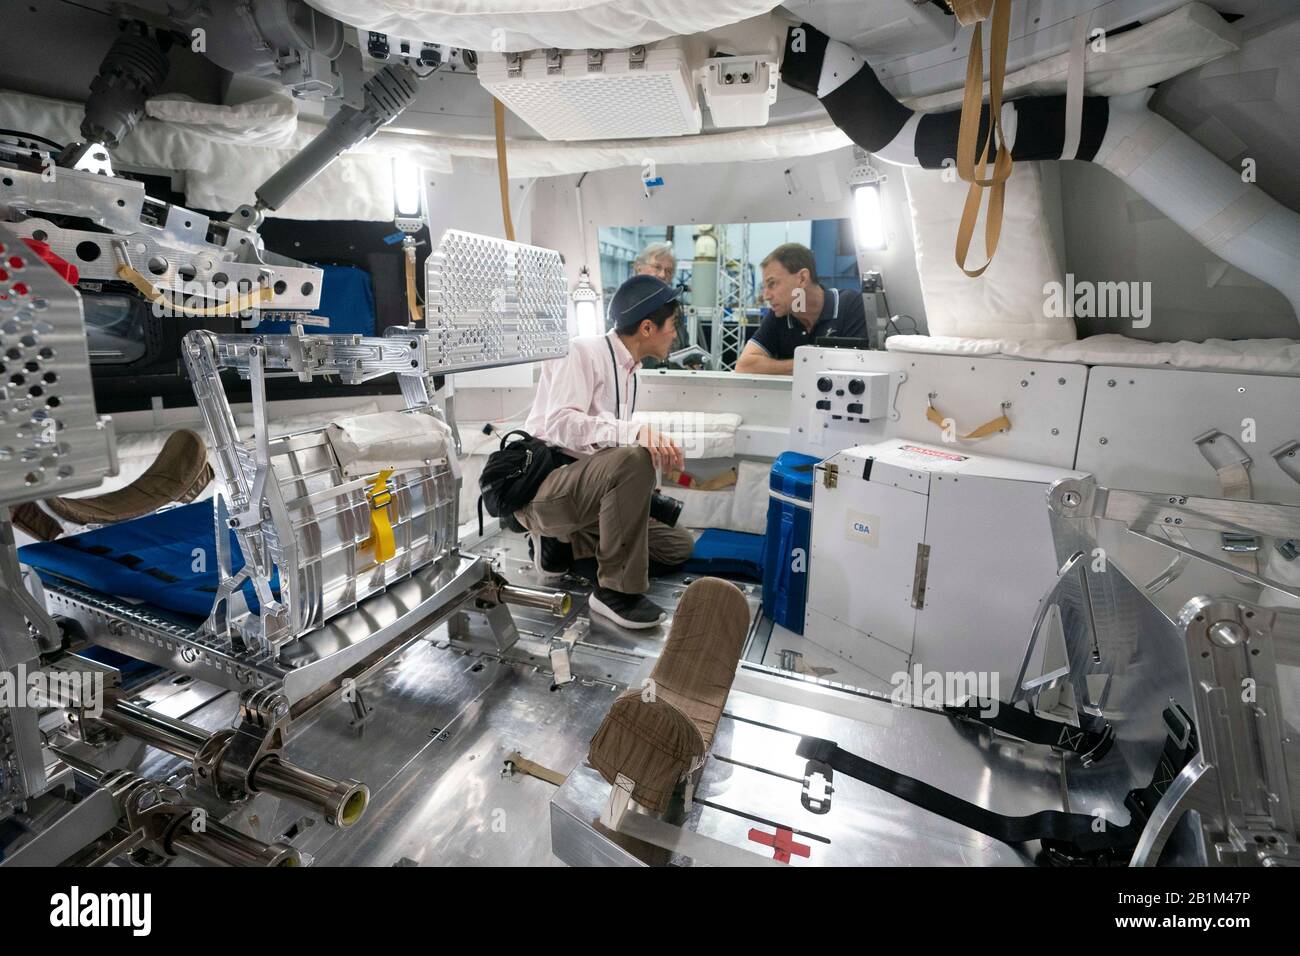 I giornalisti esplorano un mock-up della capsula spaziale Orion alla NASA di Houston che porterà quattro astronauti in future missioni spaziali profonde sulla luna, un asteroide o Marte. Foto Stock